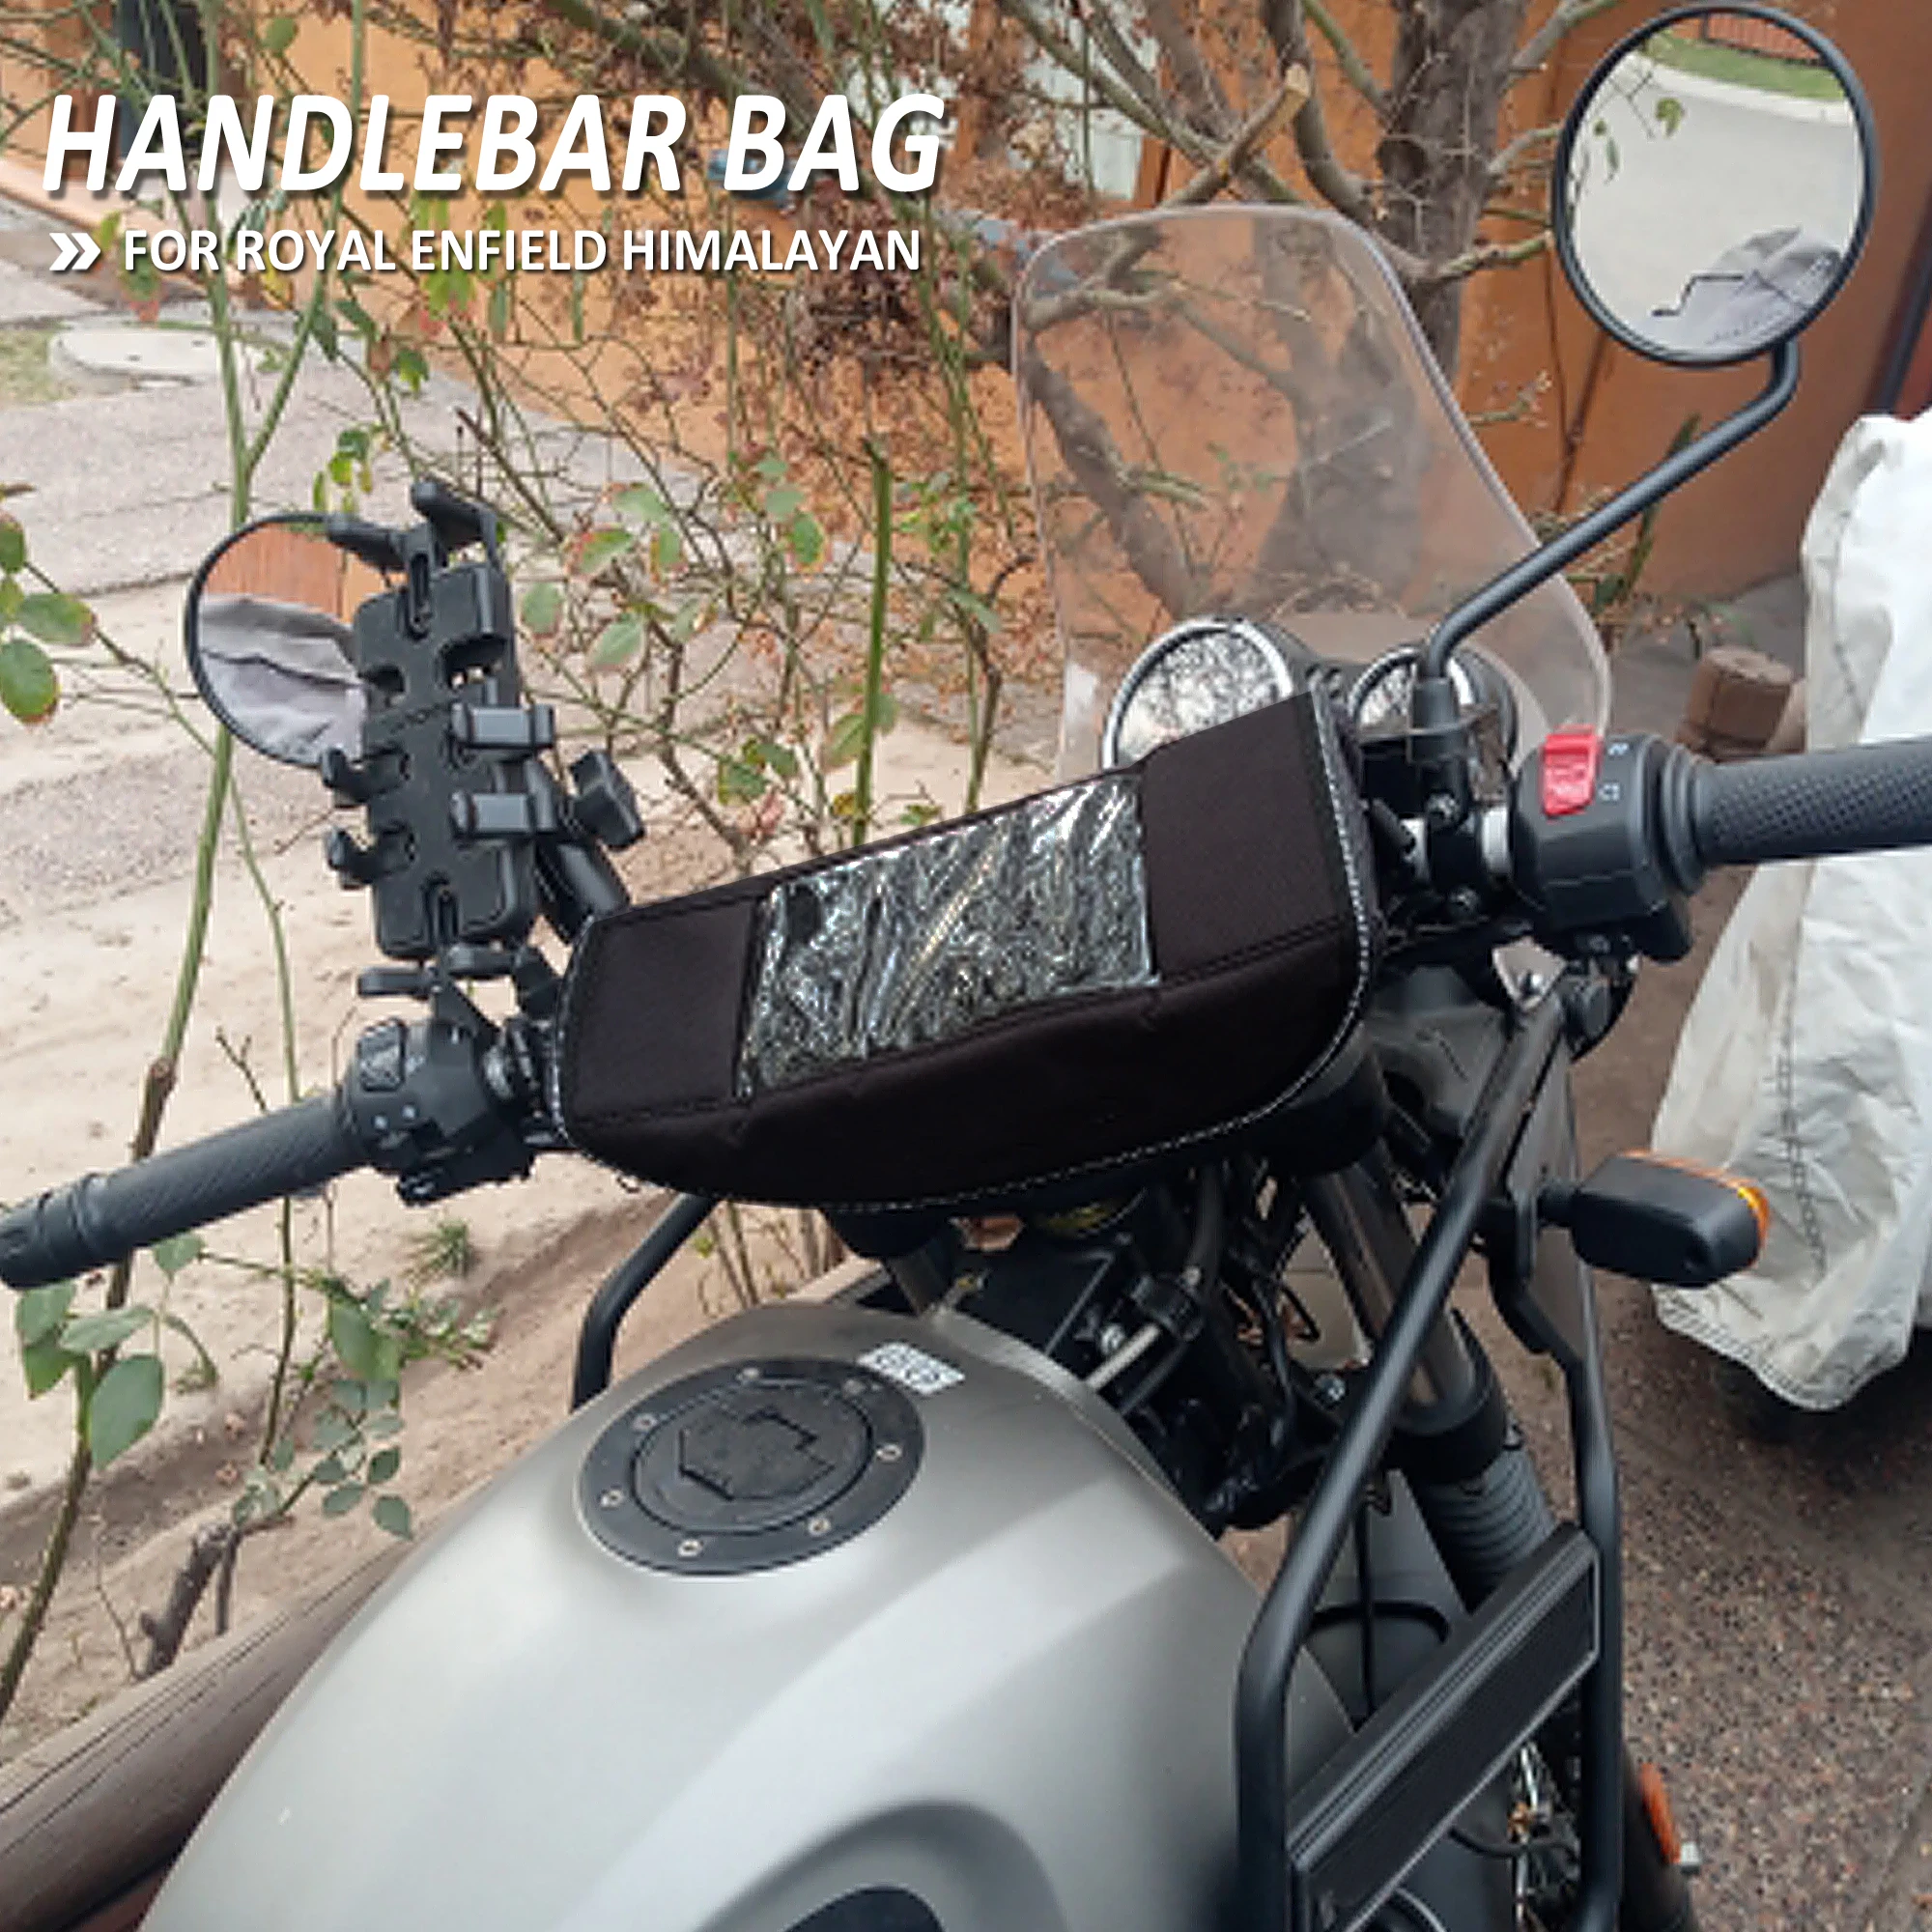 

NEW Motorcycle Waterproof Front Handlebar Bag Storage Bag For Royal Enfield Himalayan